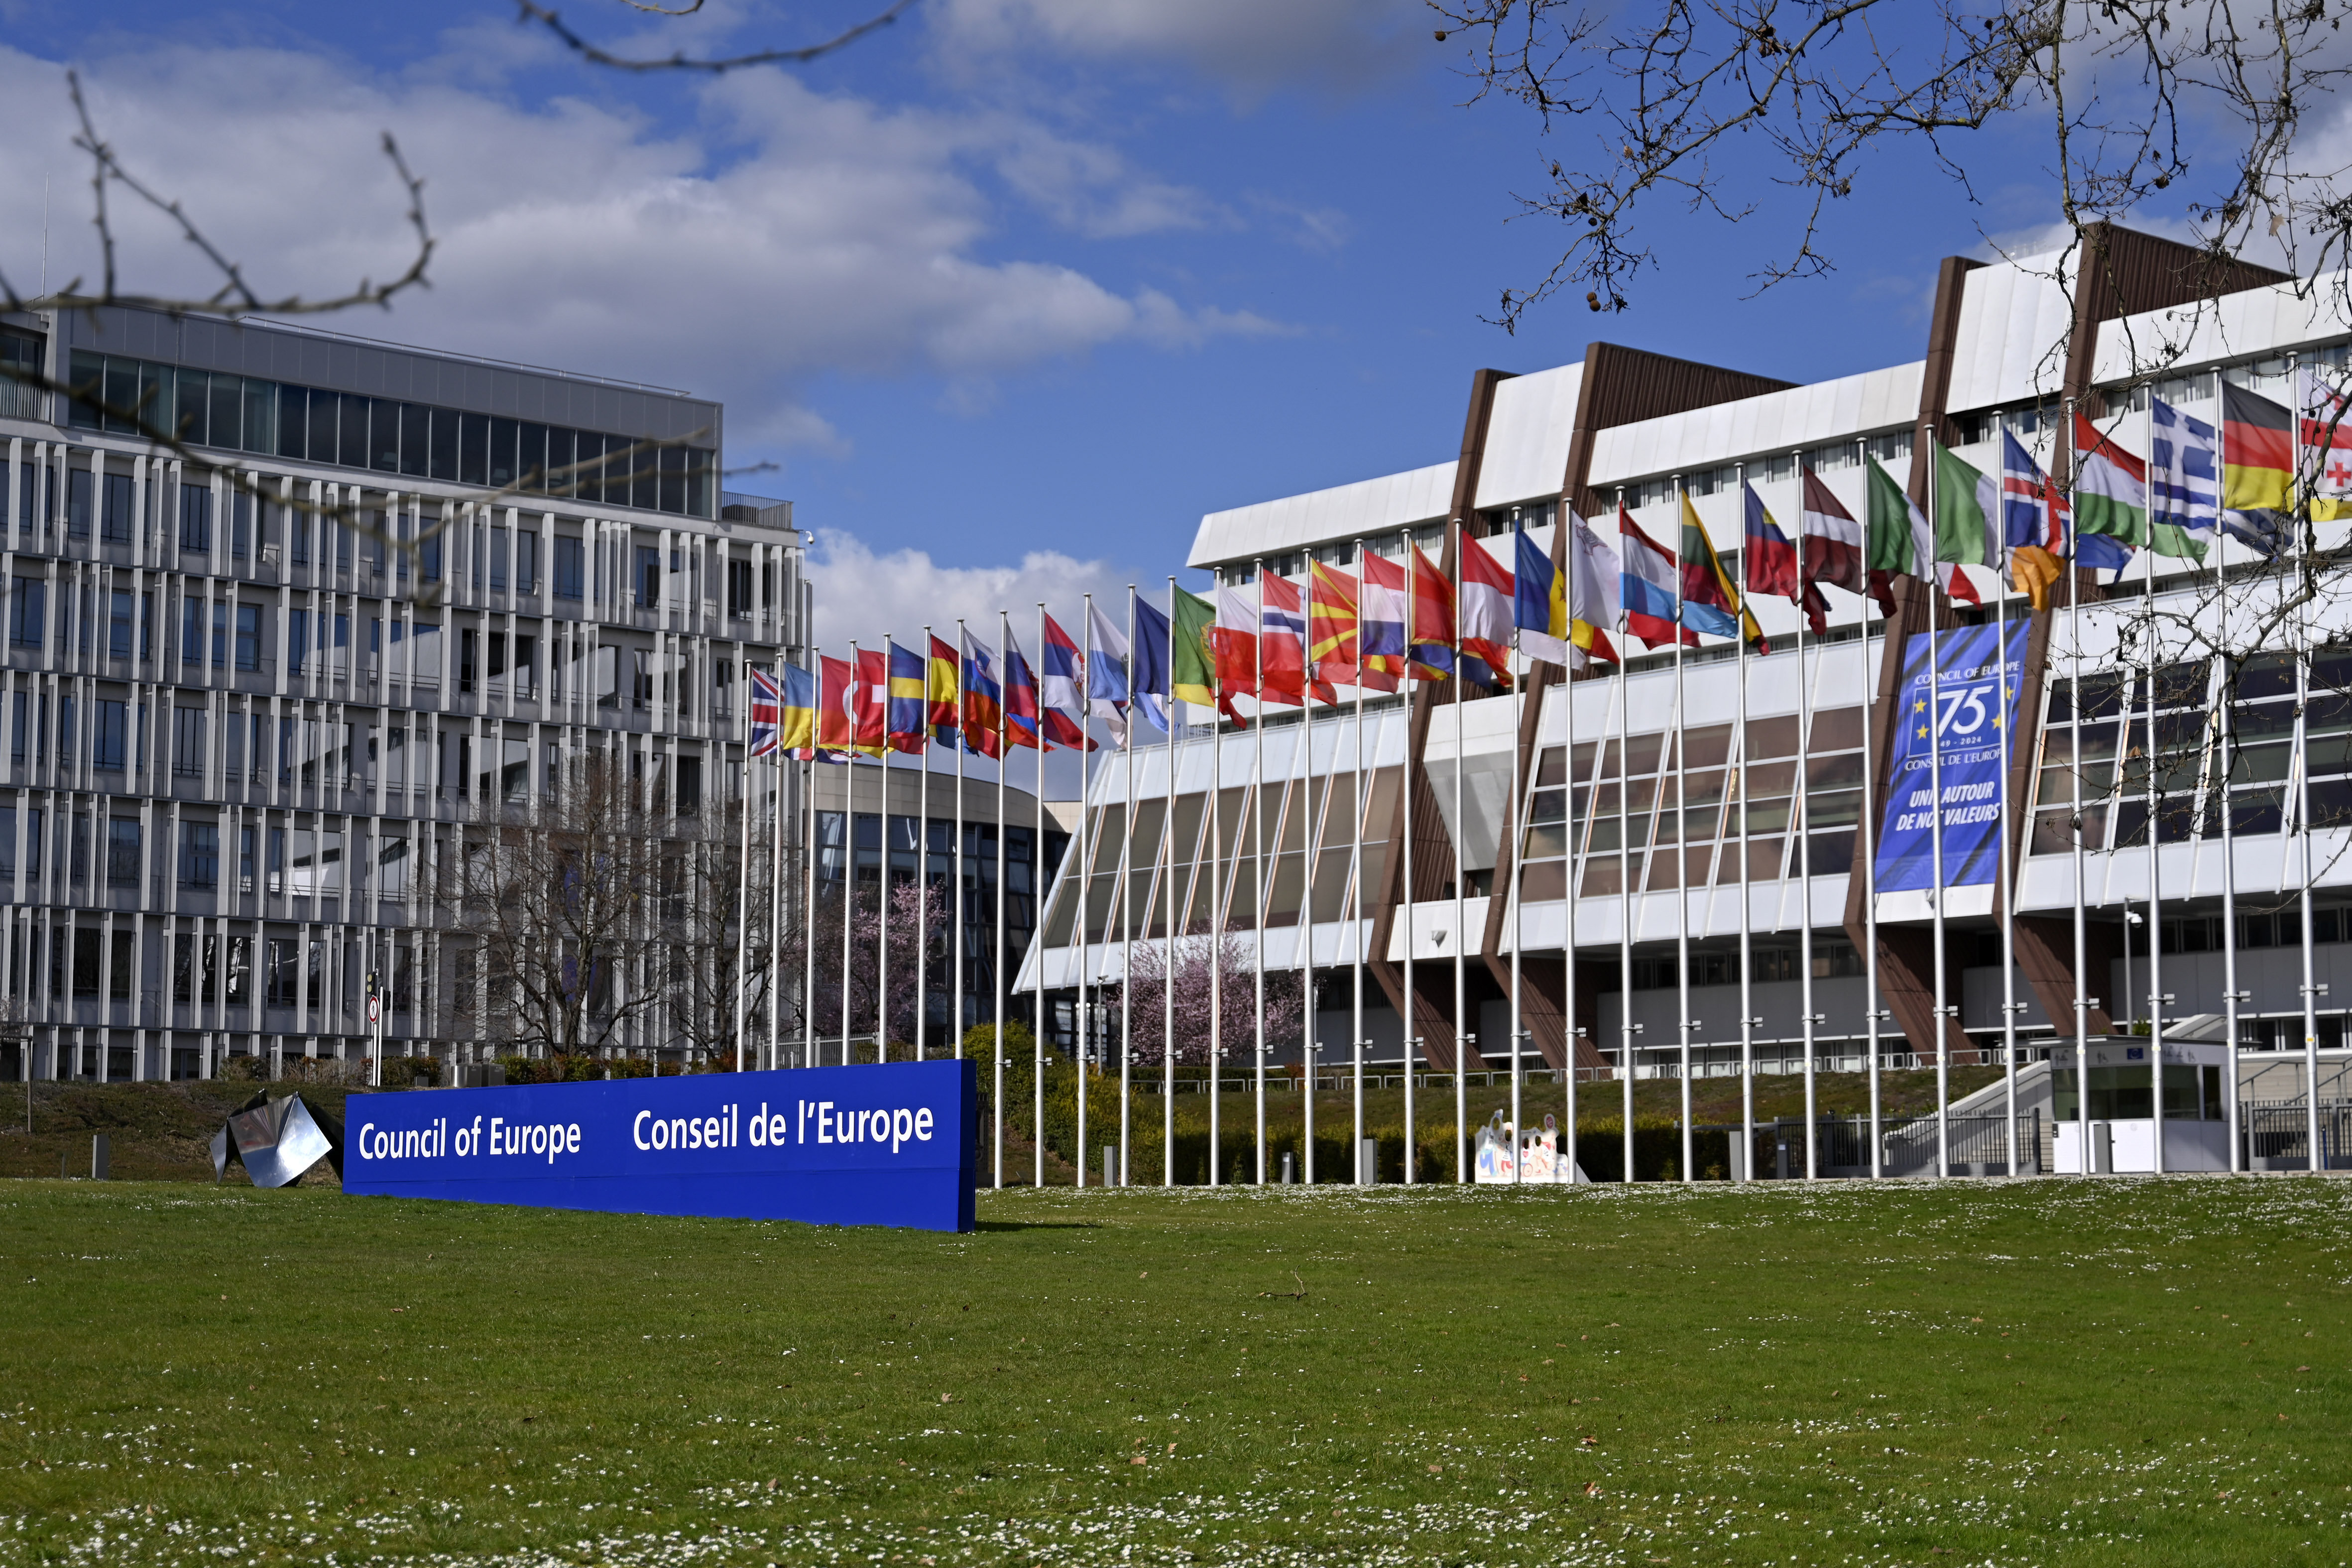 Der Europarat (Council of Europe) ist eine am 5. Mai 1949 gegründete europäische internationale Menschenrechtsorganisation, der 46 Staaten angehören. 2024 wird der Europarat 75 Jahre alt. 